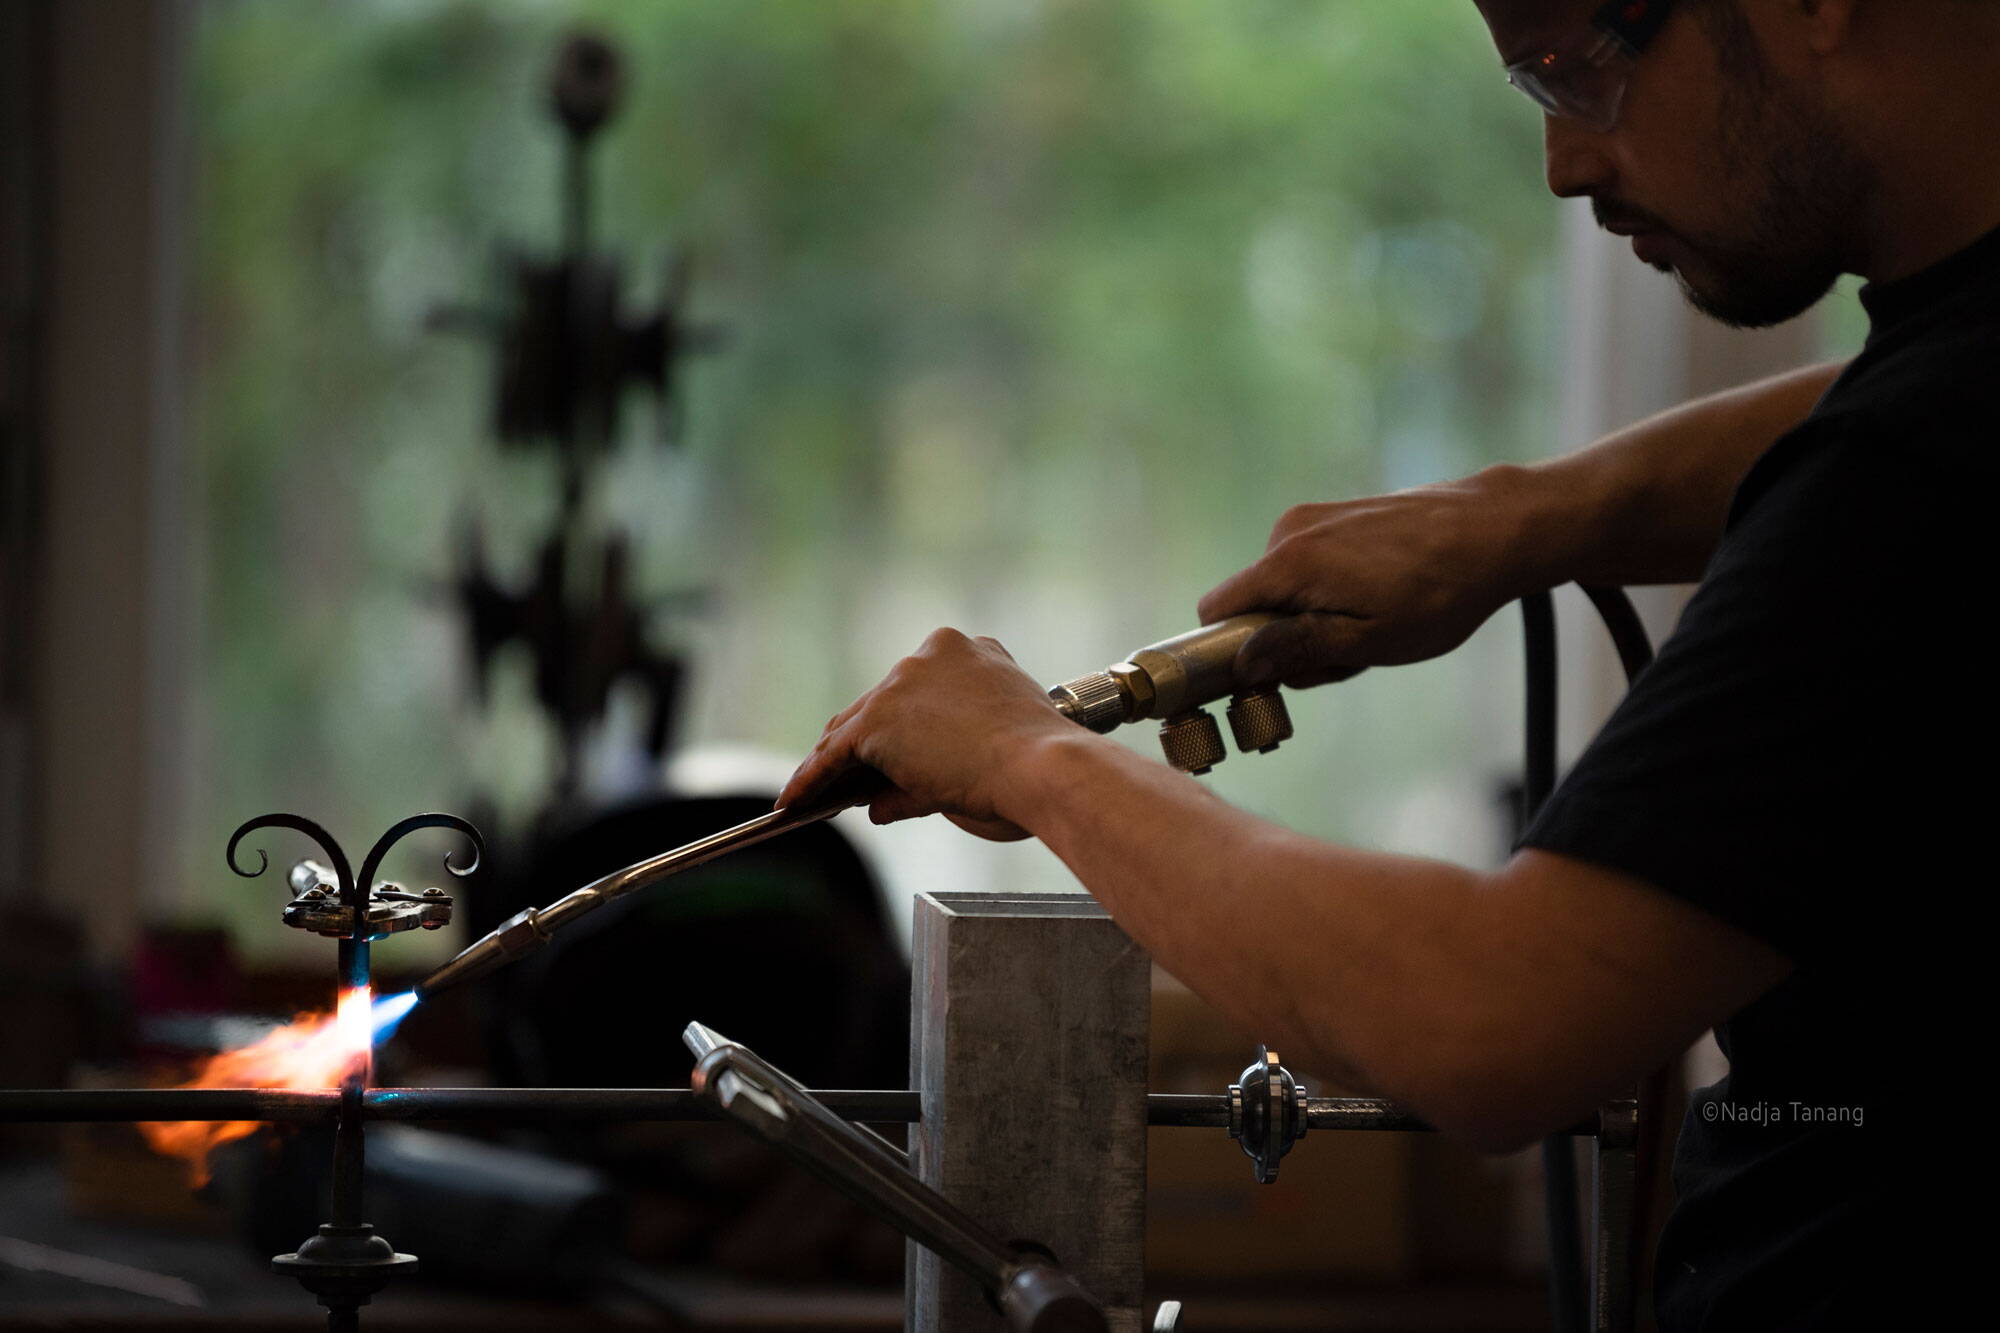 Ein Handwerker repariert Elemente eines Altbaus.